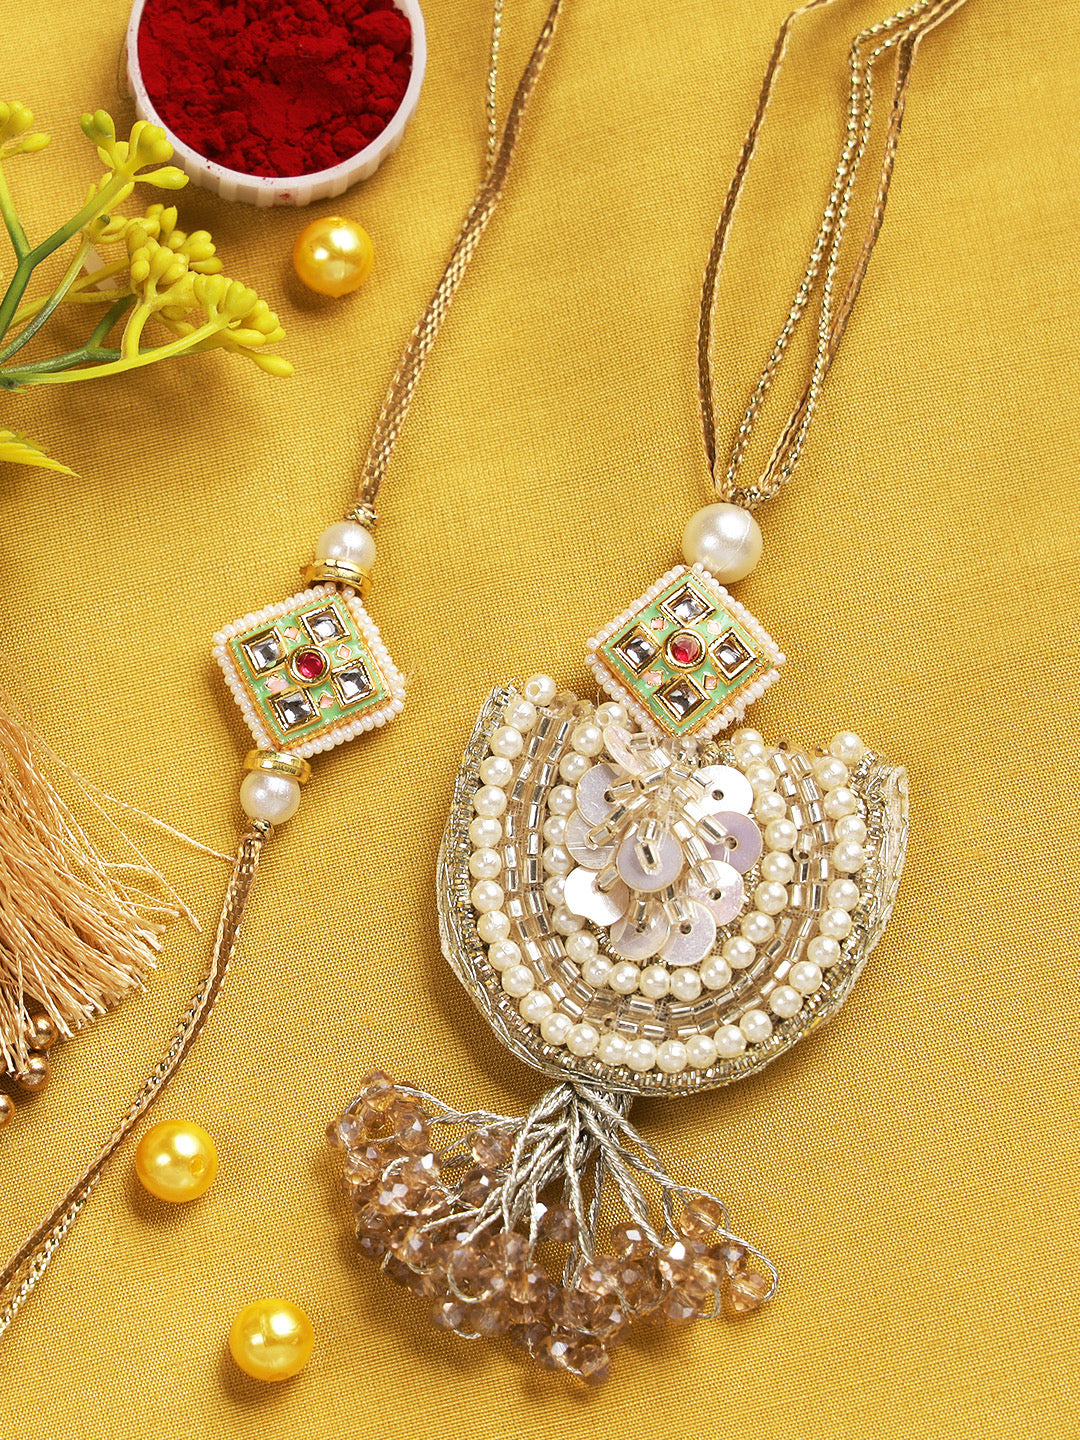 Designer Beads and Sequin Embellished Bhaiya Bhabhi Rakhi Set - Only Rakhi (RP22405)